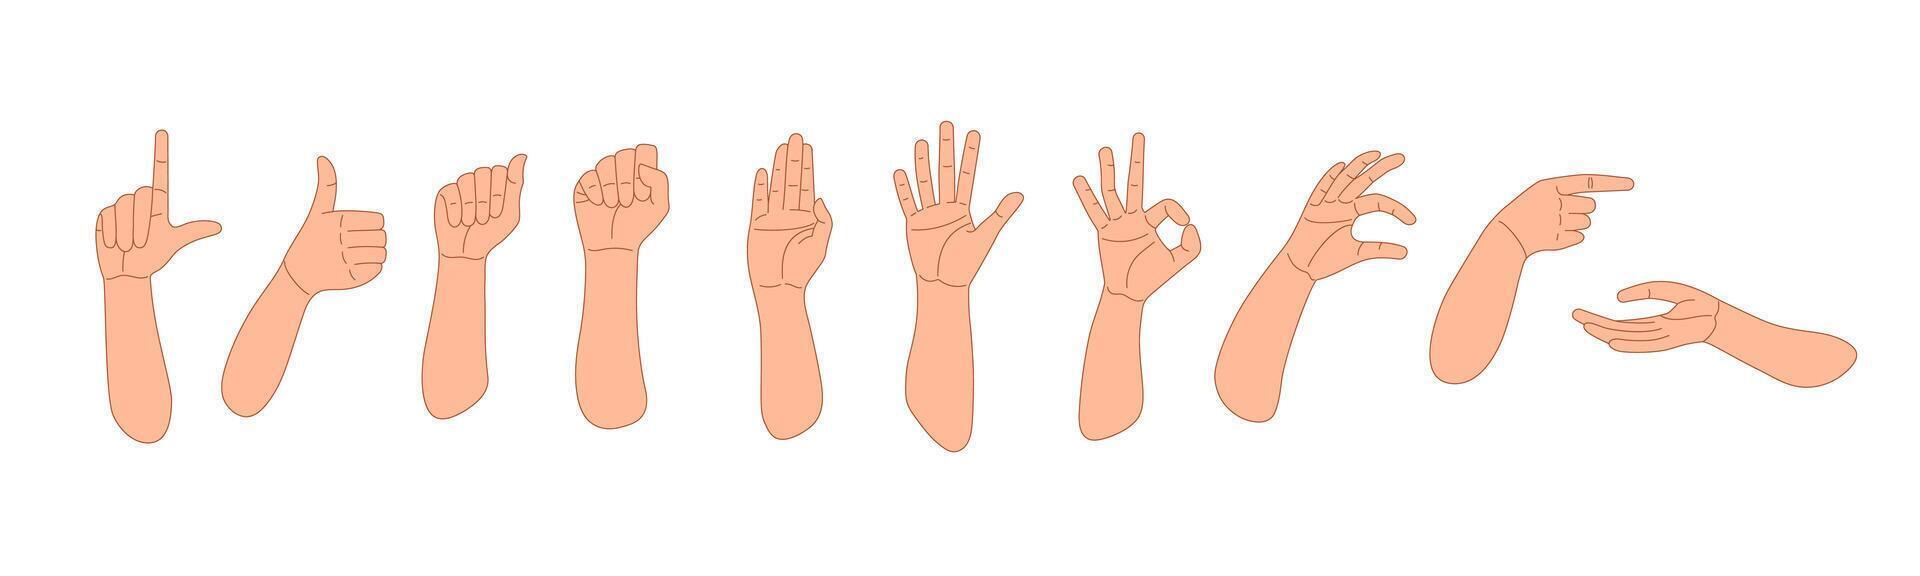 webrealista humano mãos, sinais e gestos vetor